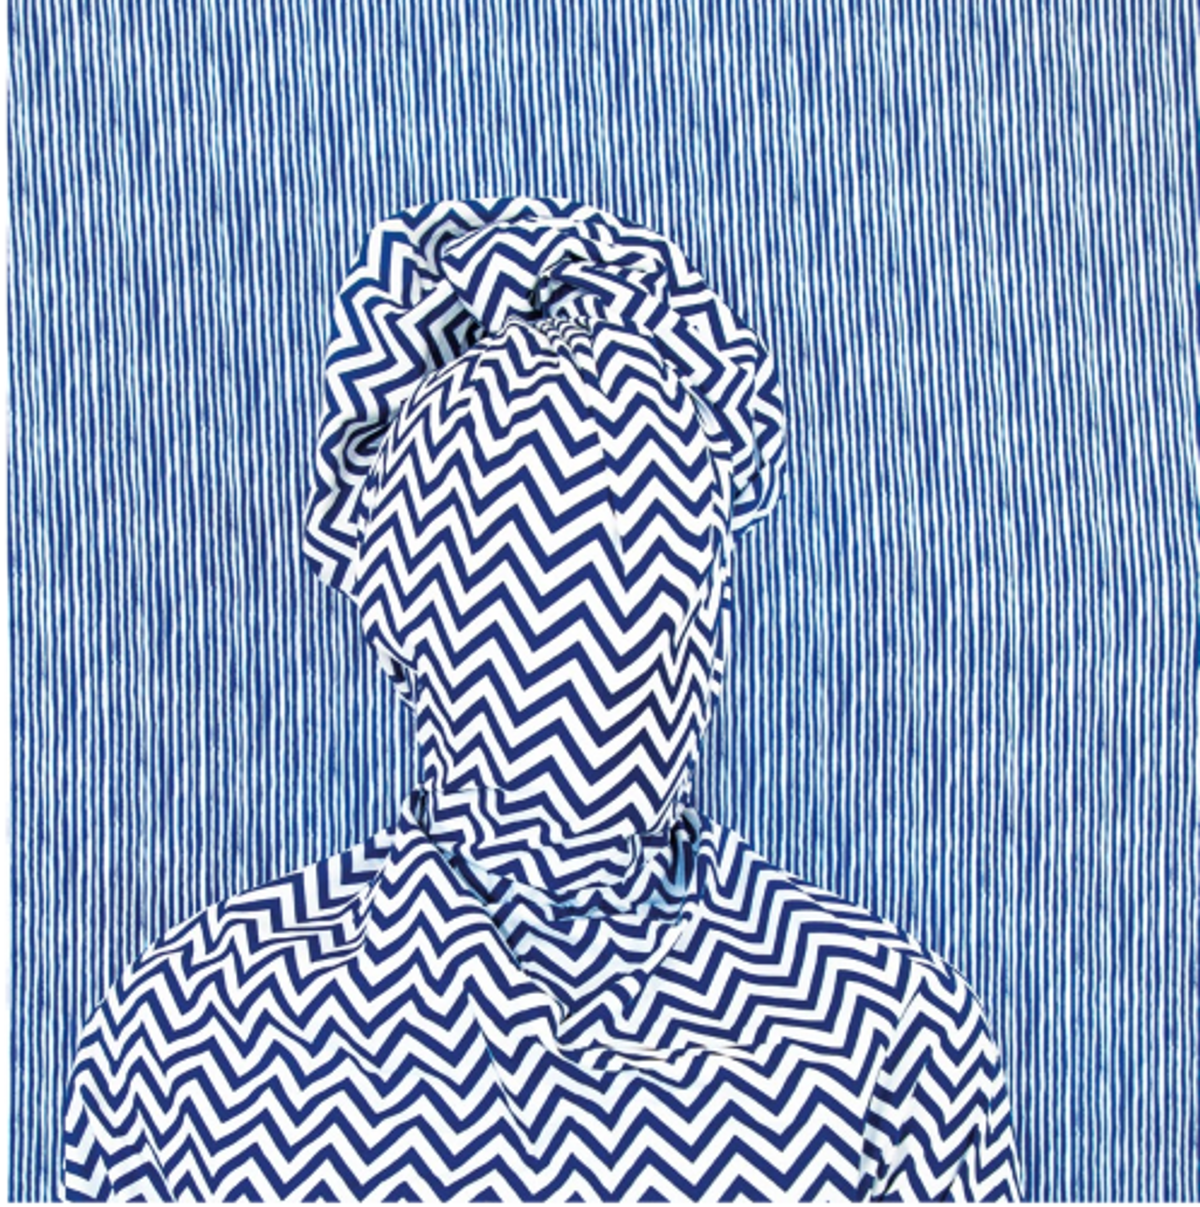 Alia Ali, Rain, série Indigo, 2021, impression pigmentaire avec stratifié UV montée sur Dibond en aluminium. Courtesy de l’artiste et 193 Gallery.